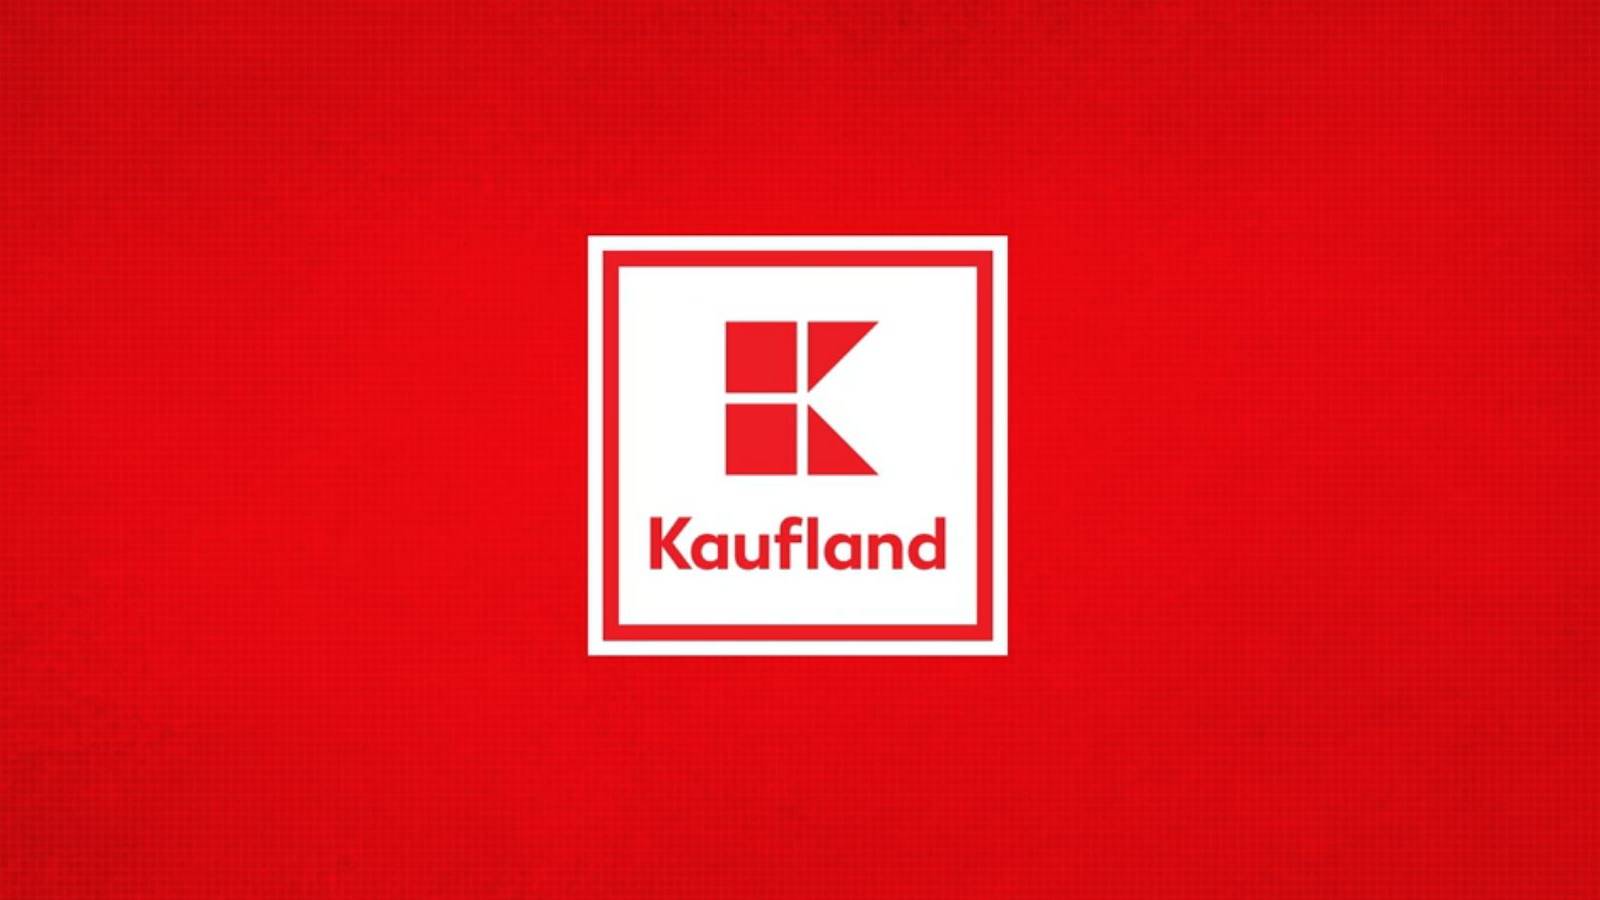 Kaufland-kunder informerade OFFICIELLT Många rumäner kände inte till lojalitetskortet